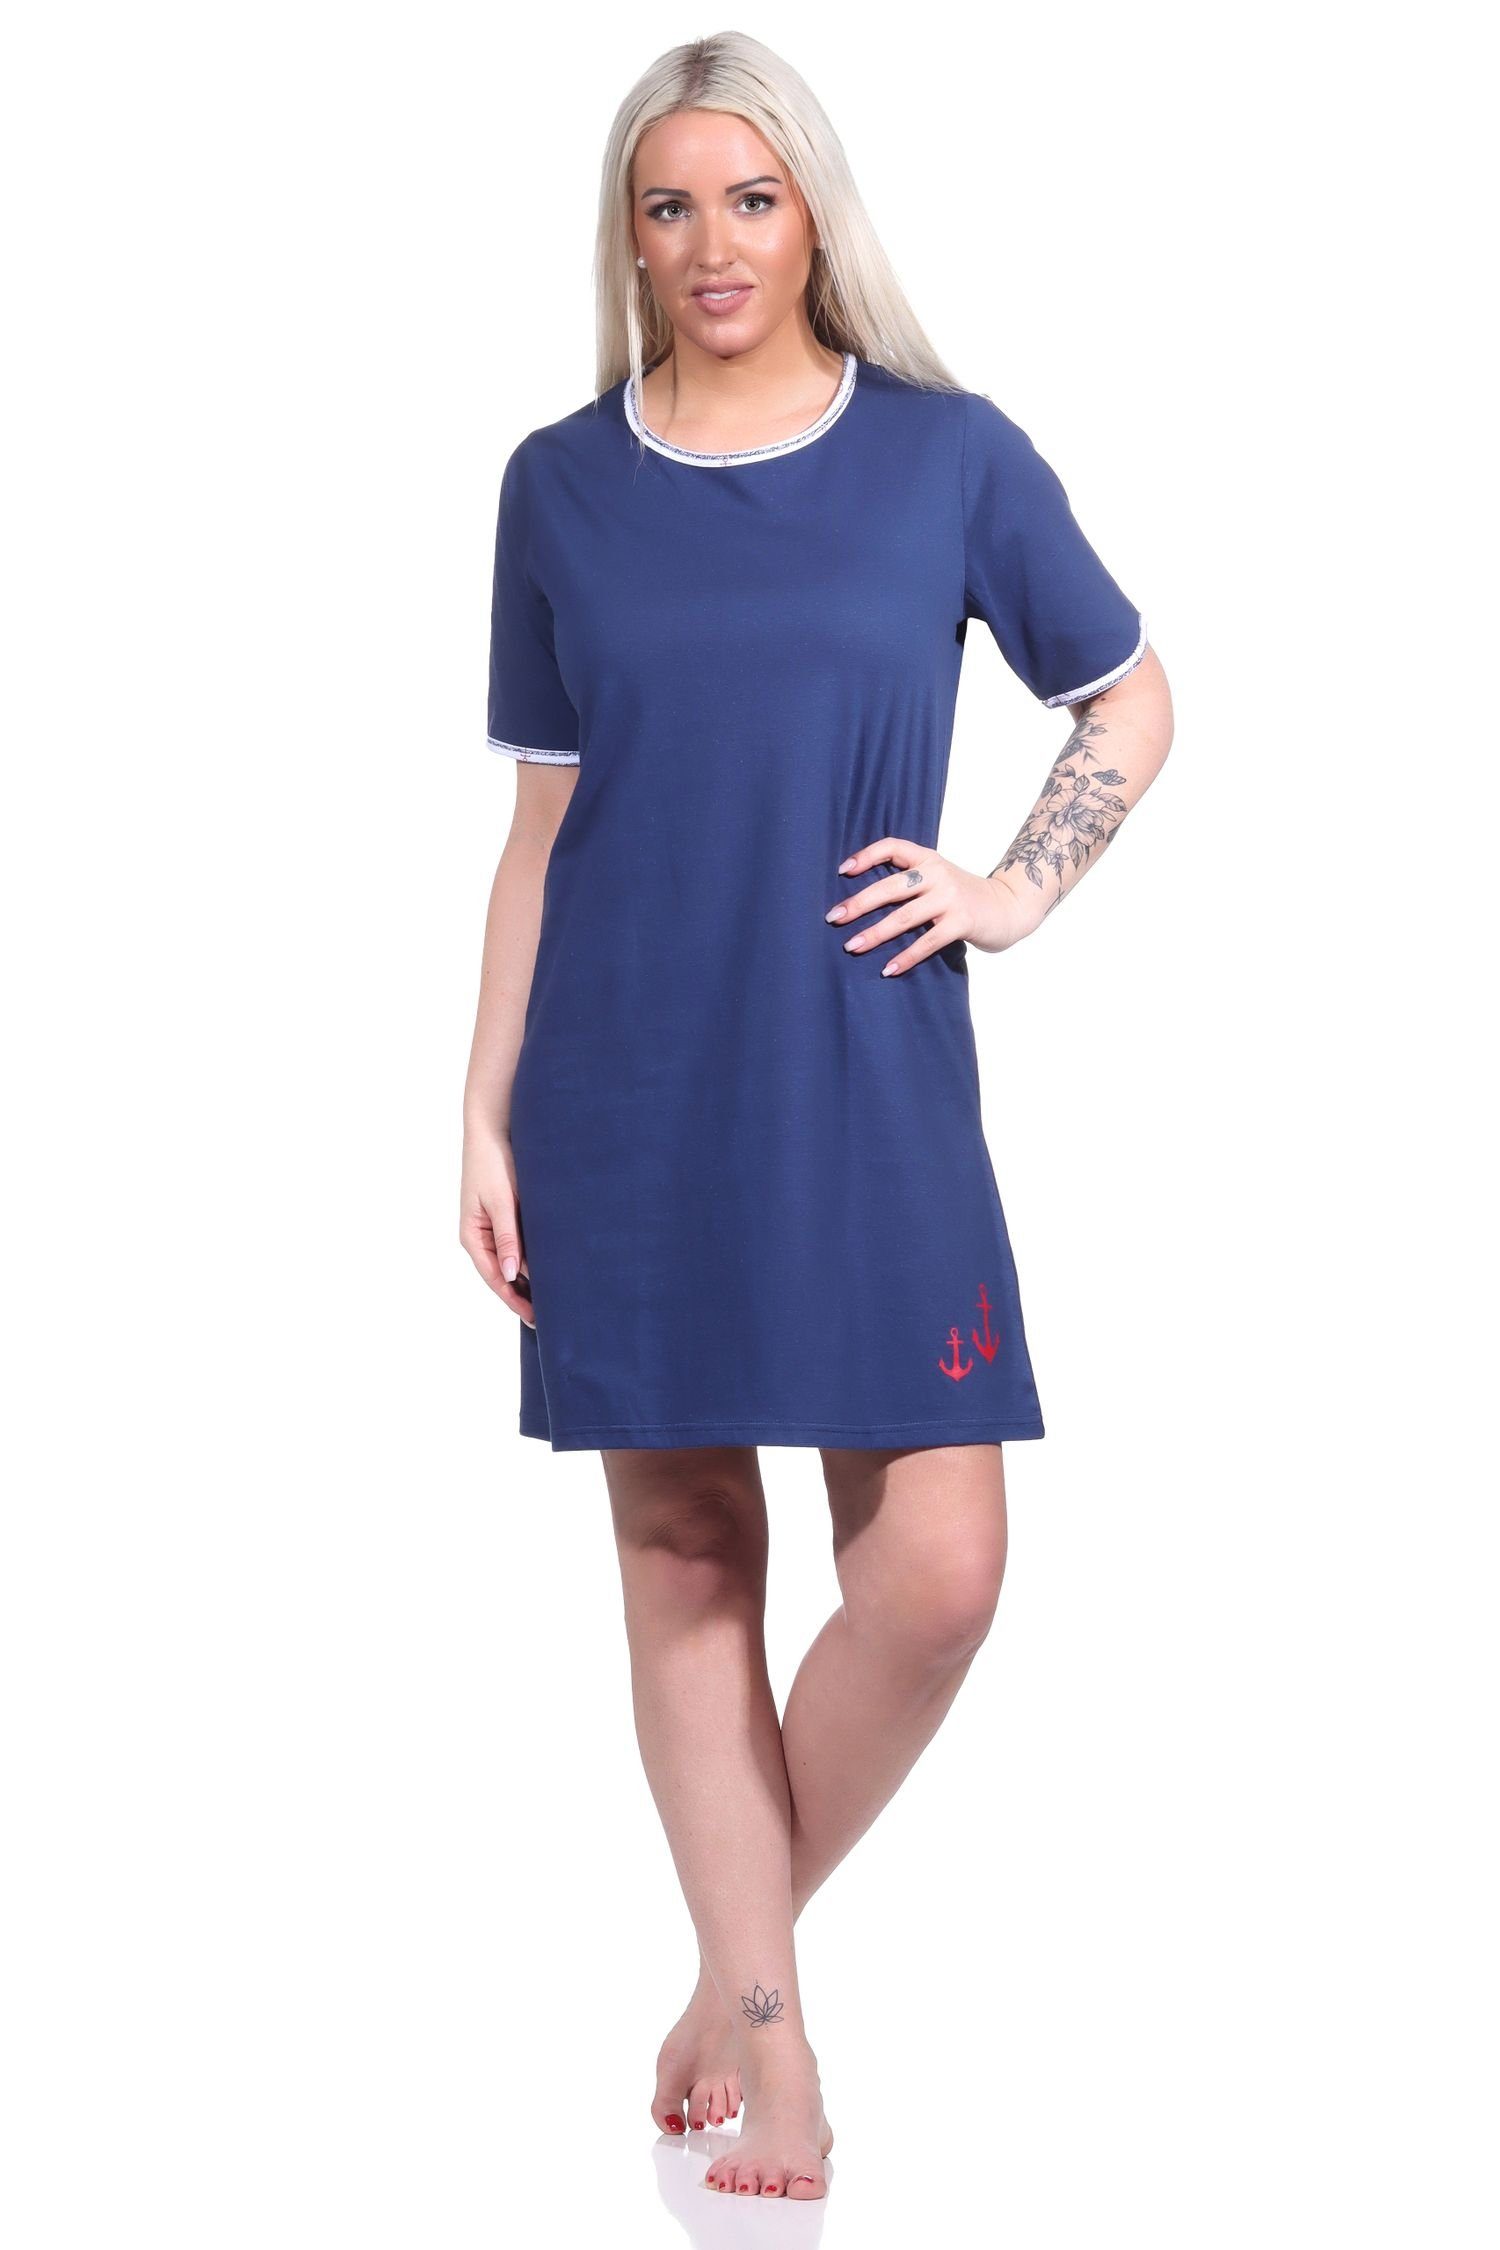 Normann Nachthemd Maritimes Damen Nachthemd, kurzärmliges Bigshirt mit Rundhals marine | Nachthemden